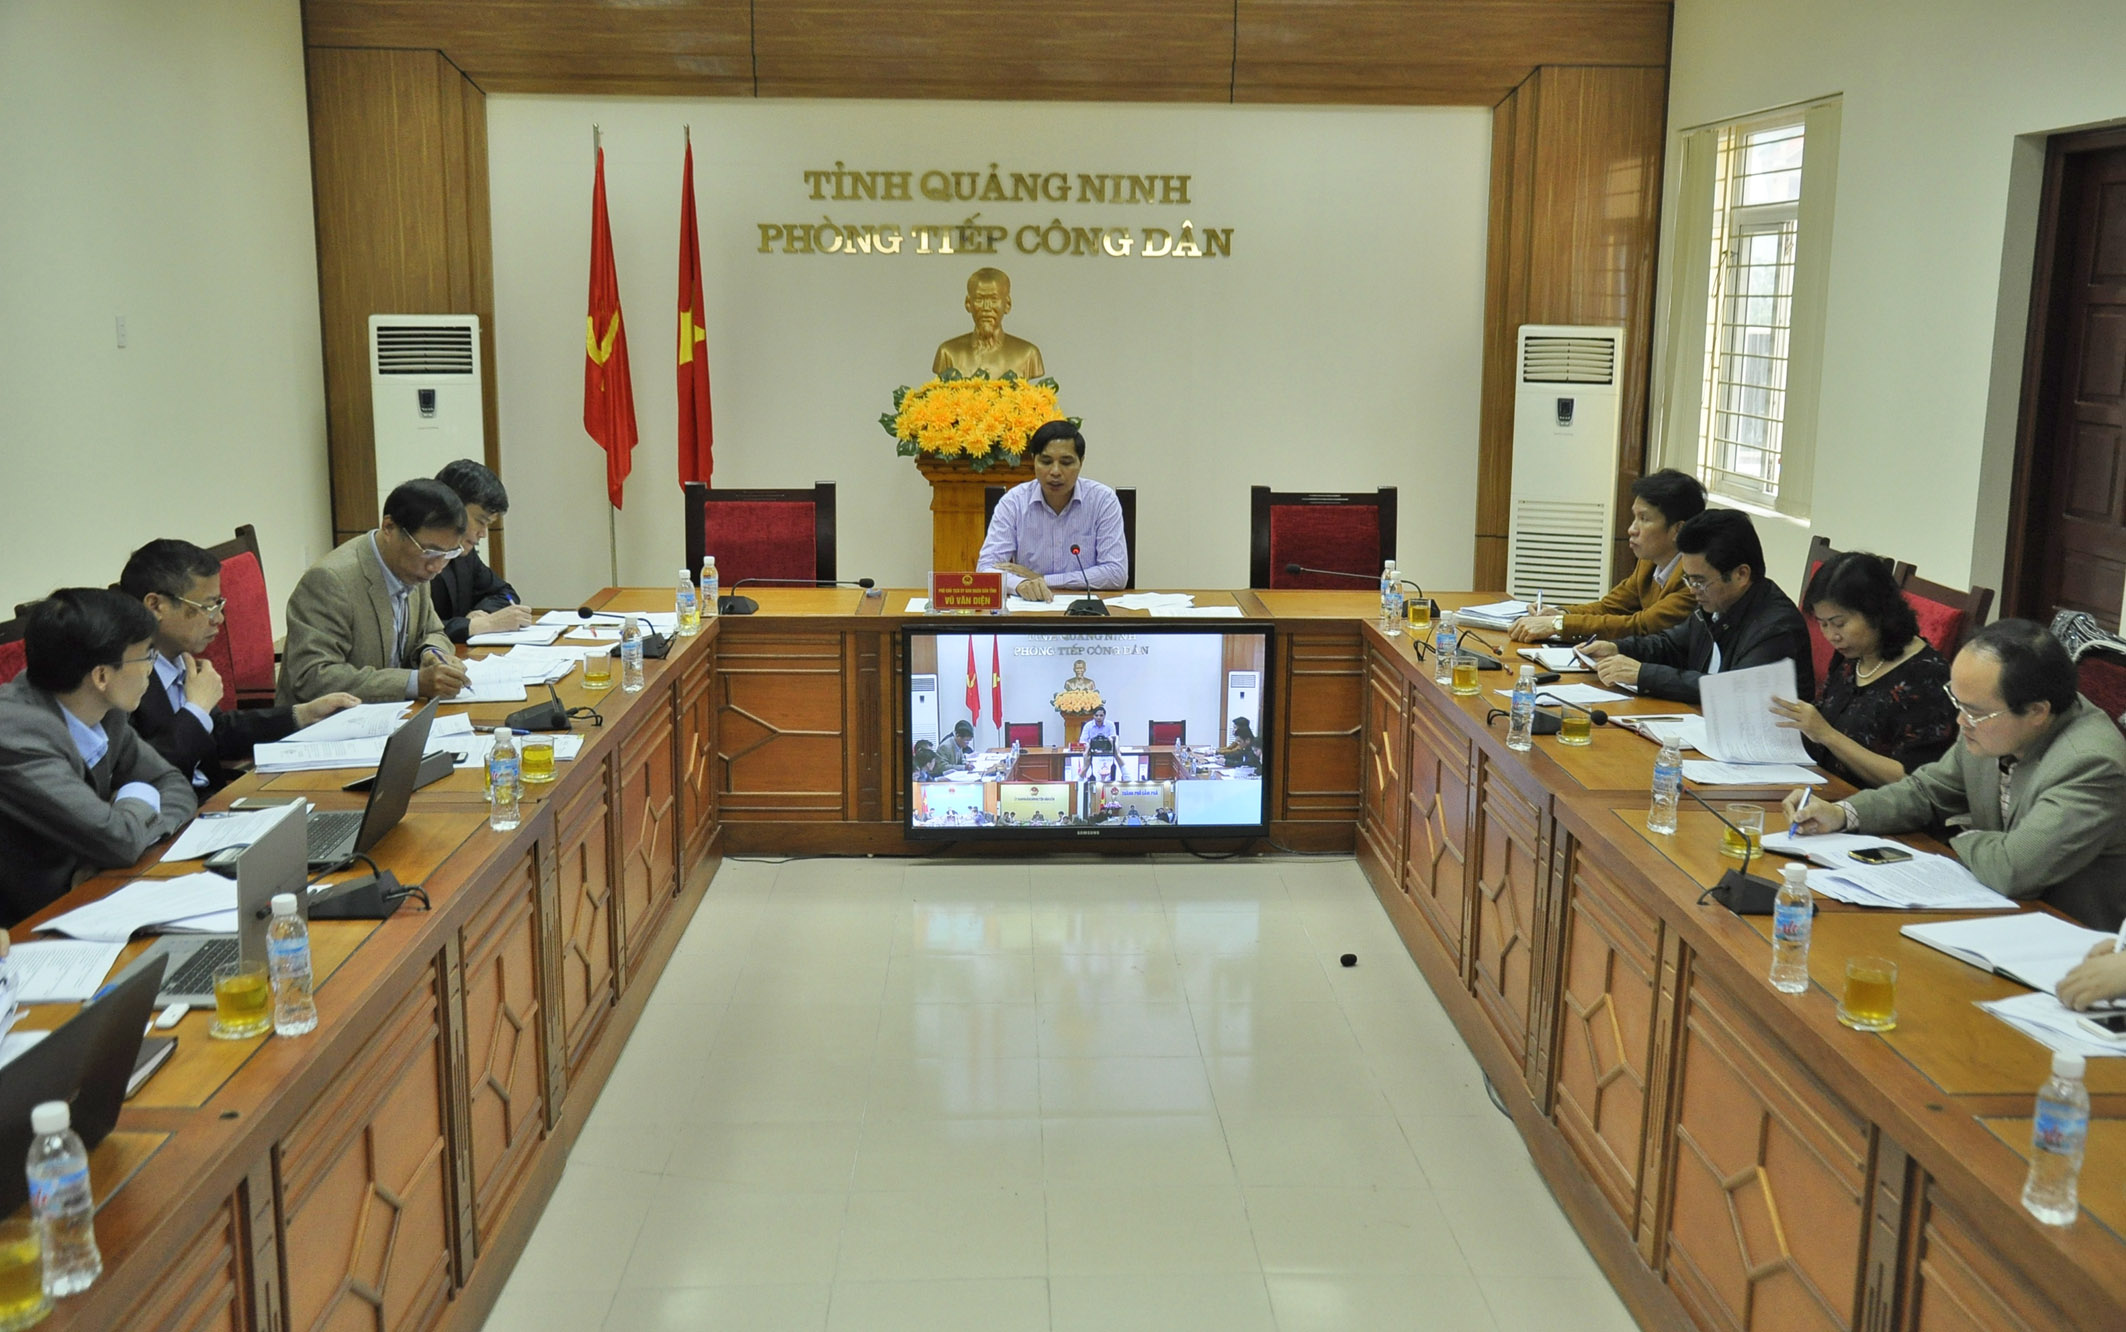 Phó Chủ tịch UBND tỉnh Vũ Văn Diện chỉ đạo cụ thể từng vụ việc tại buổi họp định kỳ nghe báo cáo tình hình thực hiện các văn bản chỉ đạo của UBND tỉnh về giải quyết khiếu nại tố cáo.